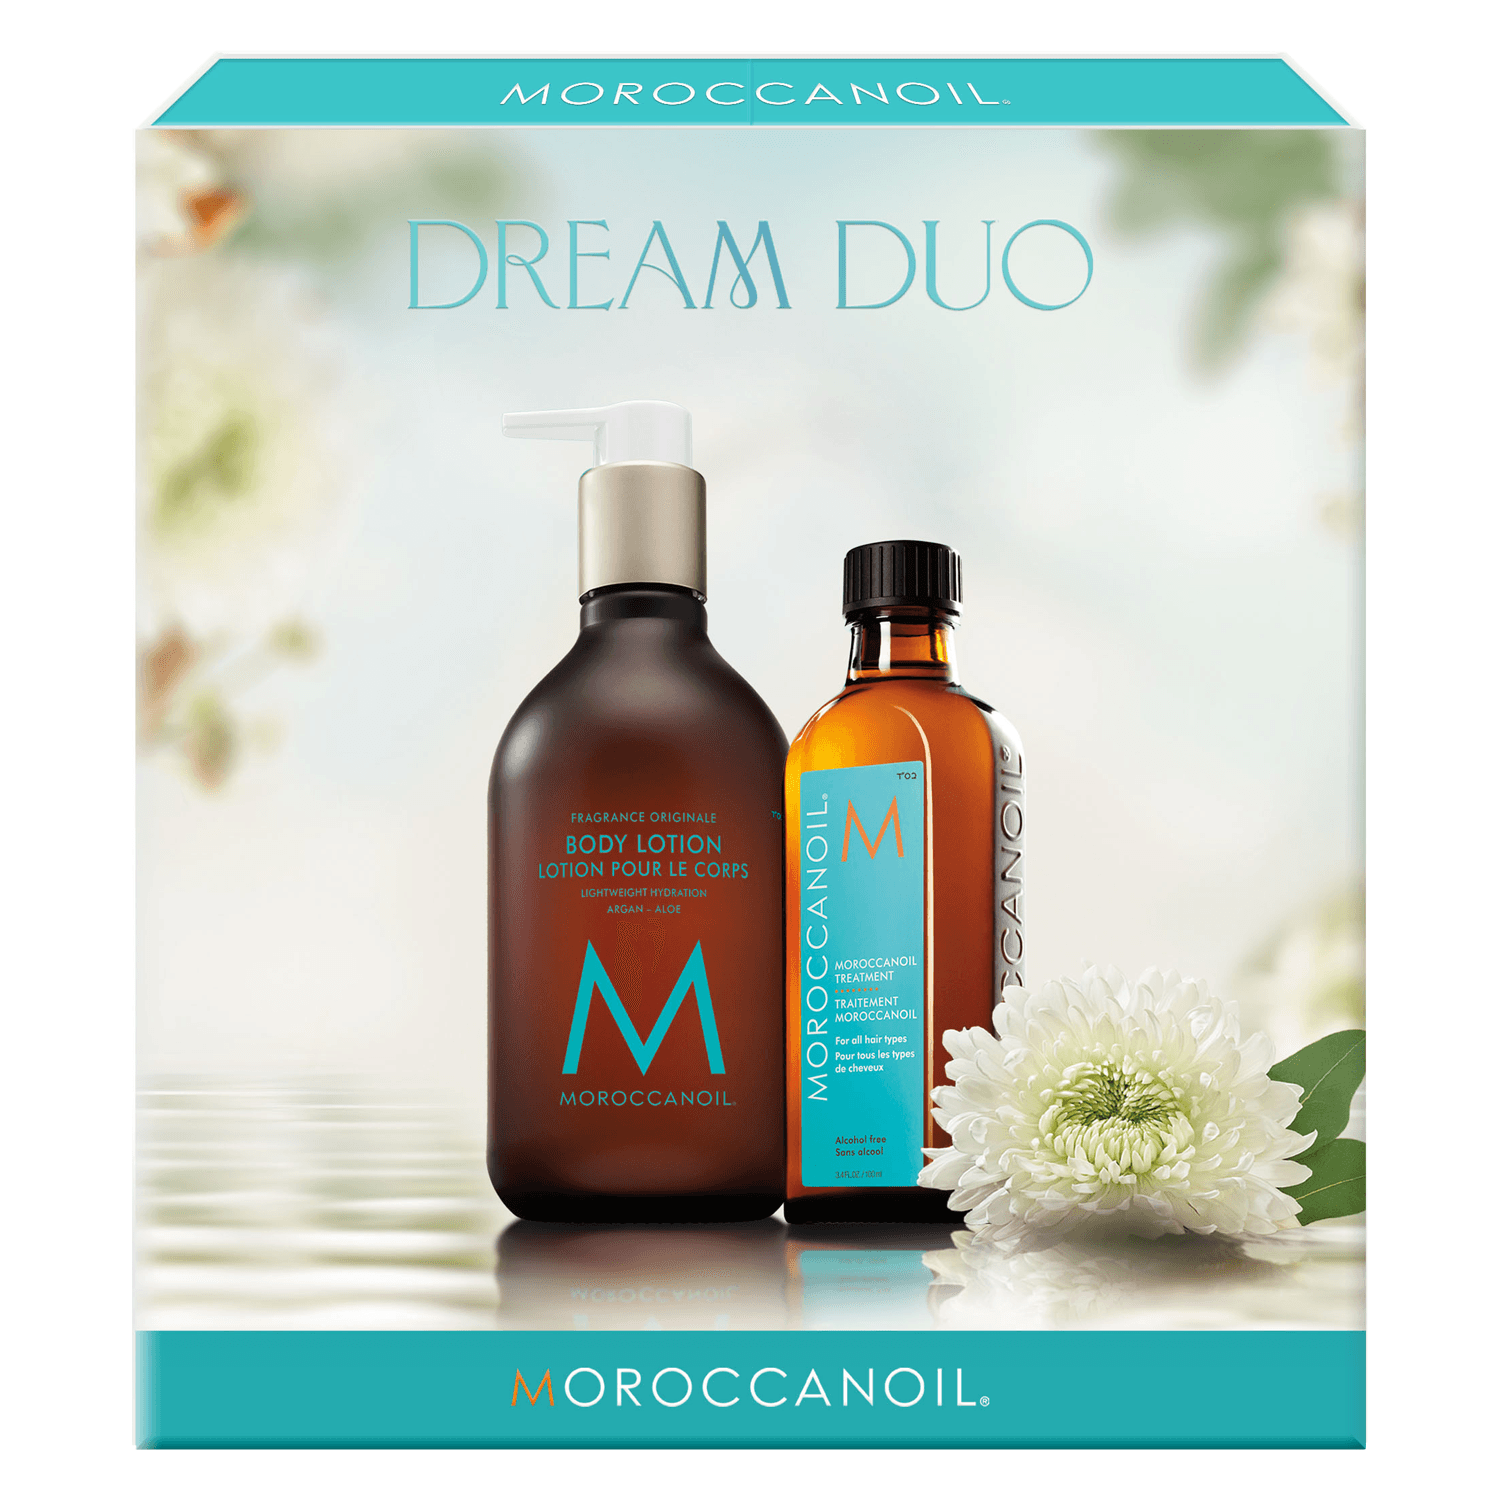 Produktbild von Moroccanoil - Oil Treatment & Body Lotion Dream Duo